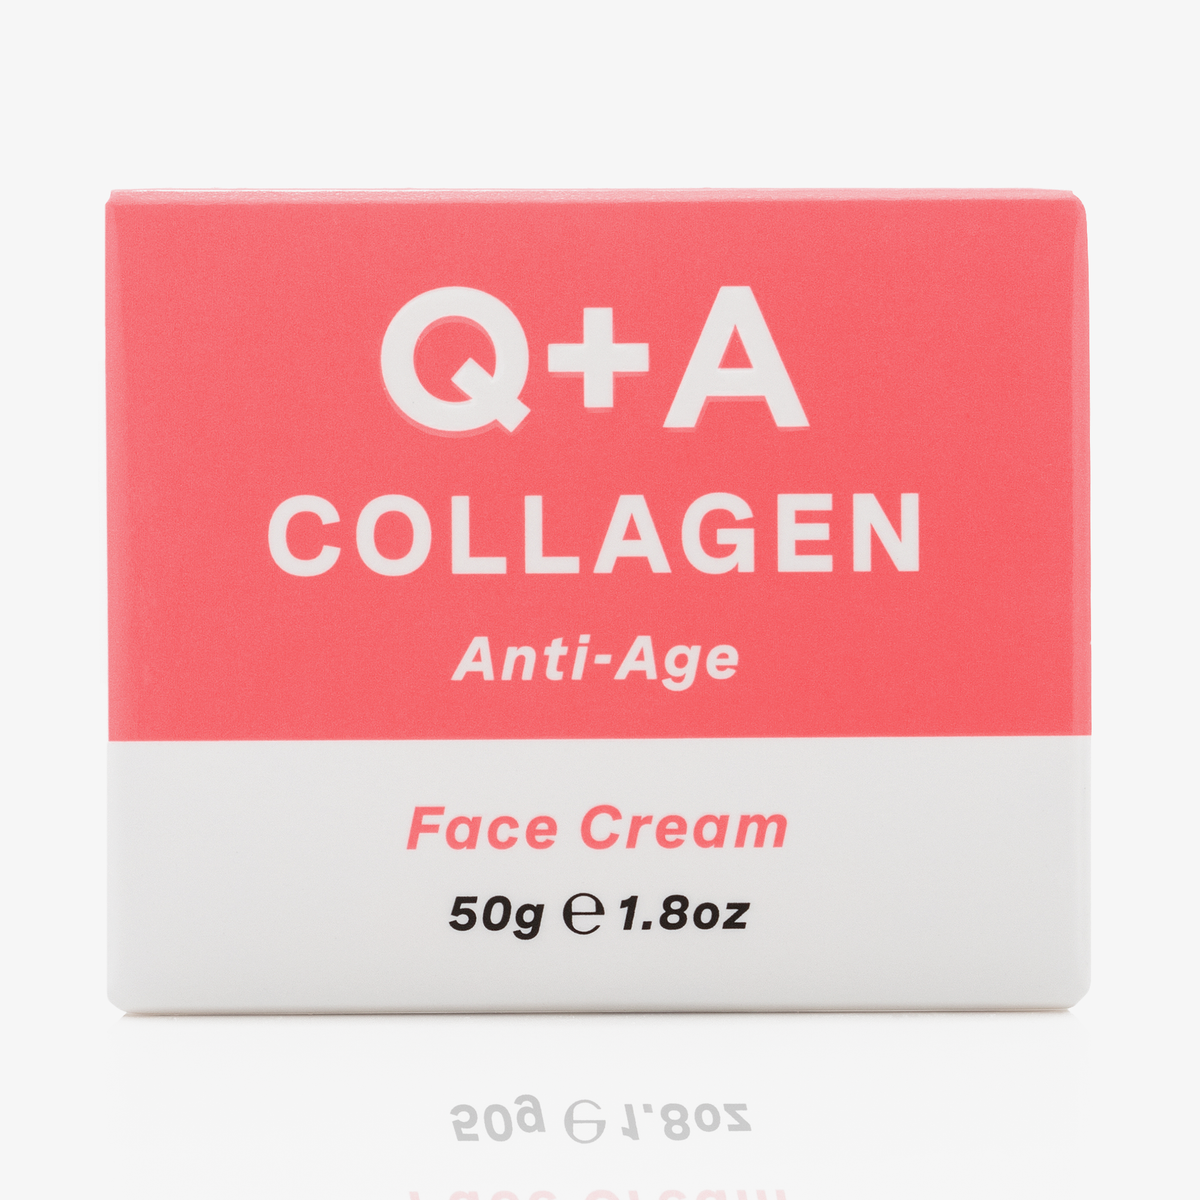 Q + A Skin | Collagen Face Cream 50g